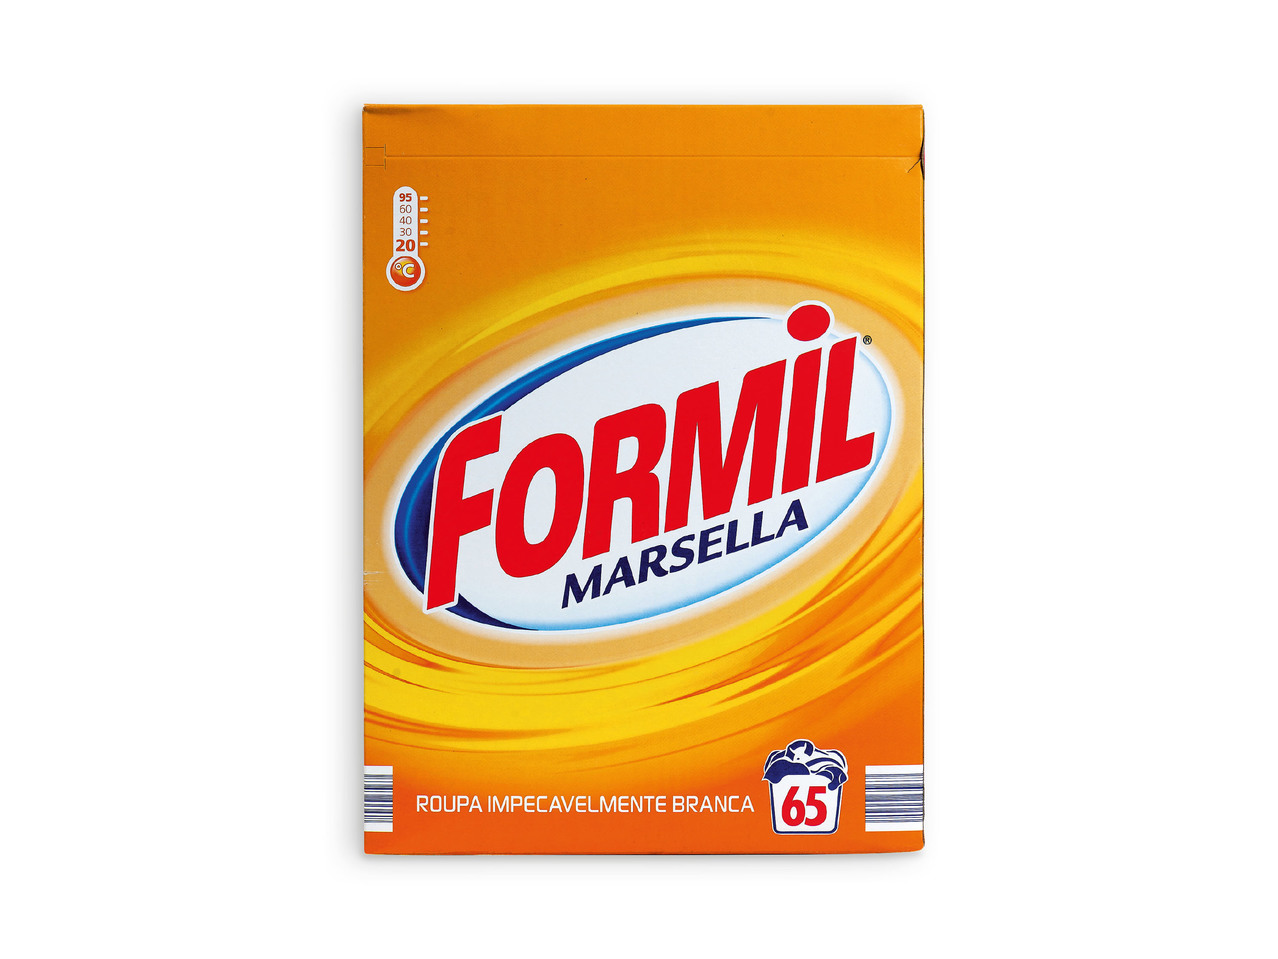 FORMIL(R) Detergente para Roupa Sabão Marselha